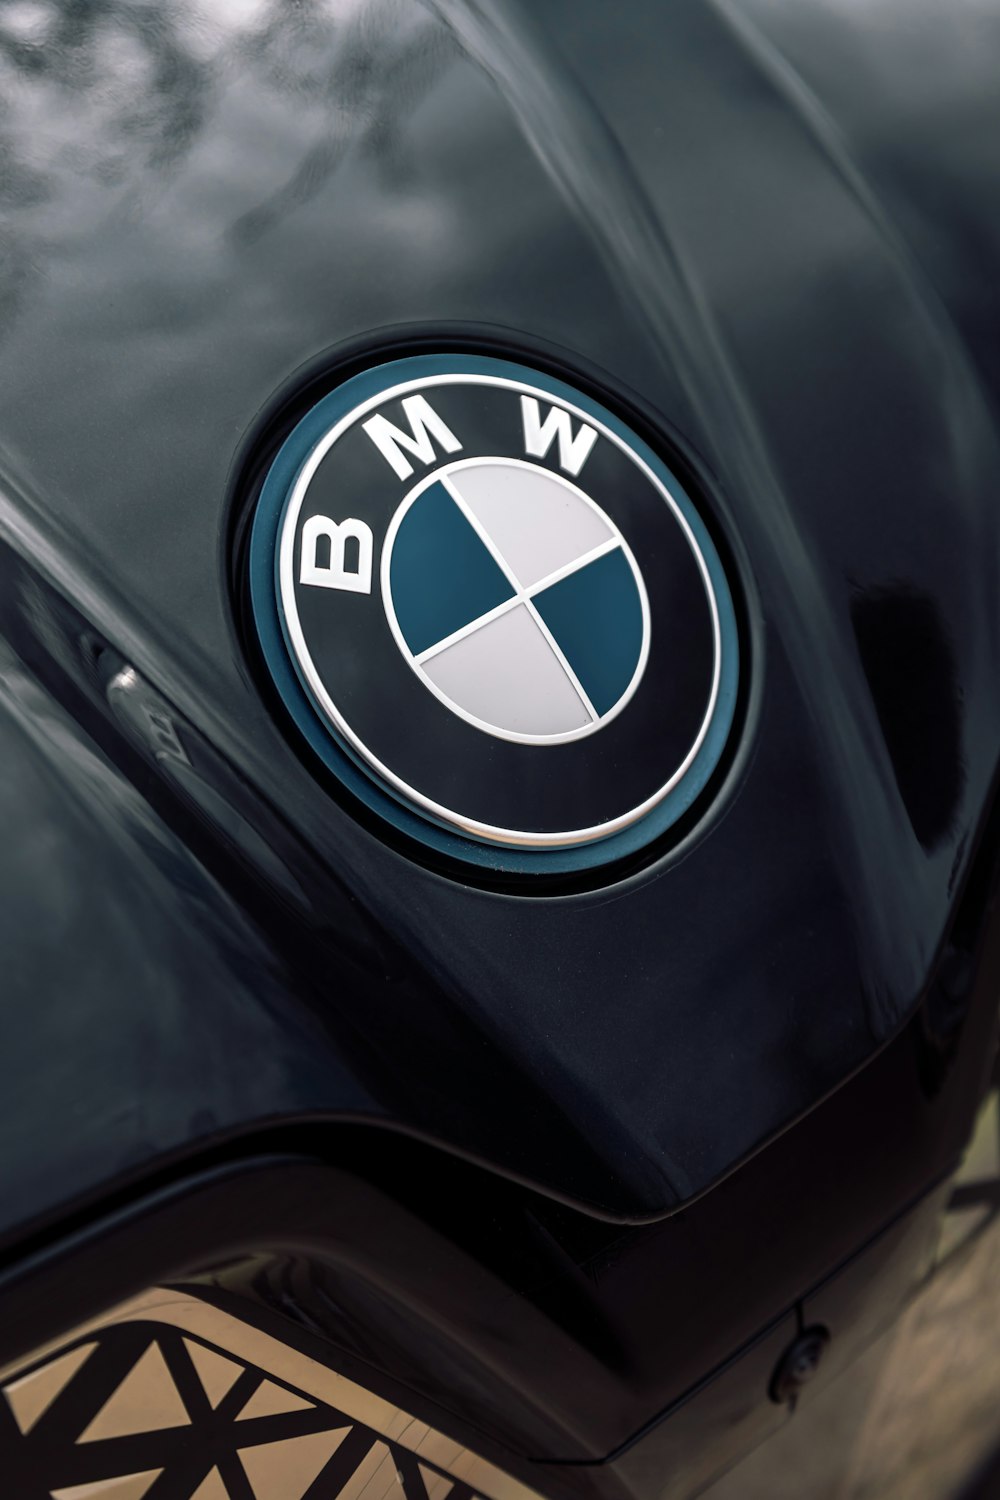 Emblème BMW Photos  Télécharger des images gratuites sur Unsplash